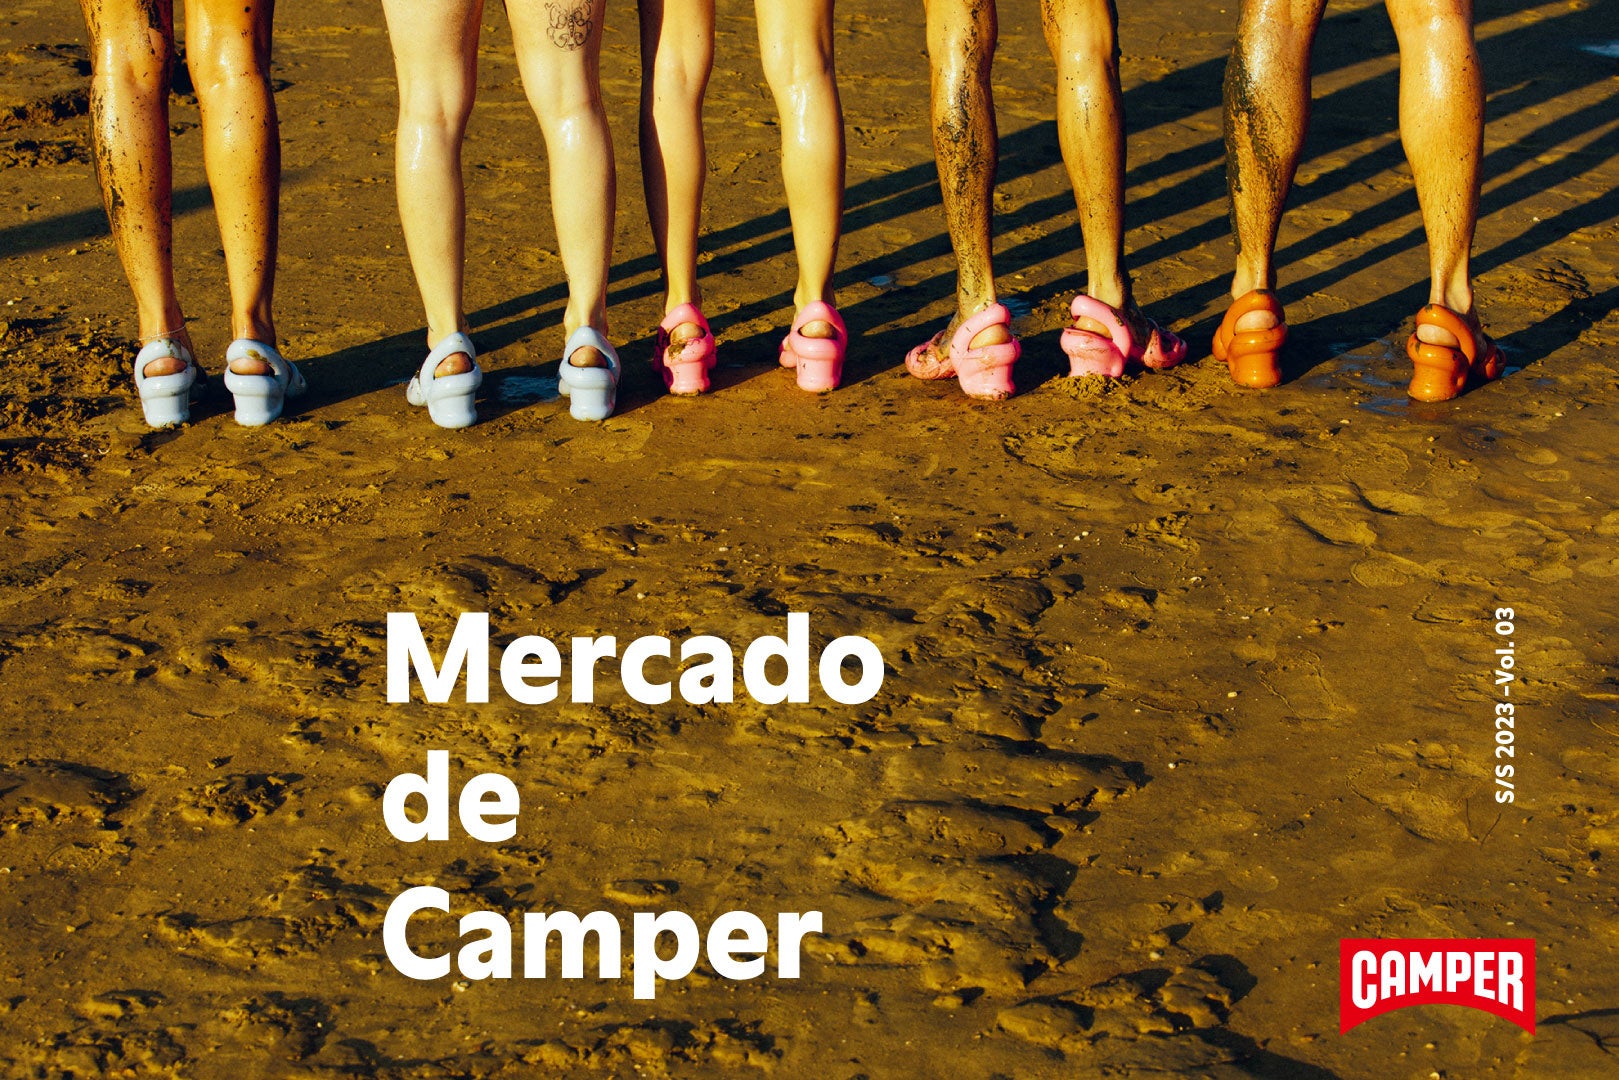 カンペールの世界観を体現した「Mercado de Camper vol.3」原宿に登場、スペシャルなラインナップを初展示のブランドキャンペーン“THE WALKING SOCIETY”とともにお届けのサブ画像1